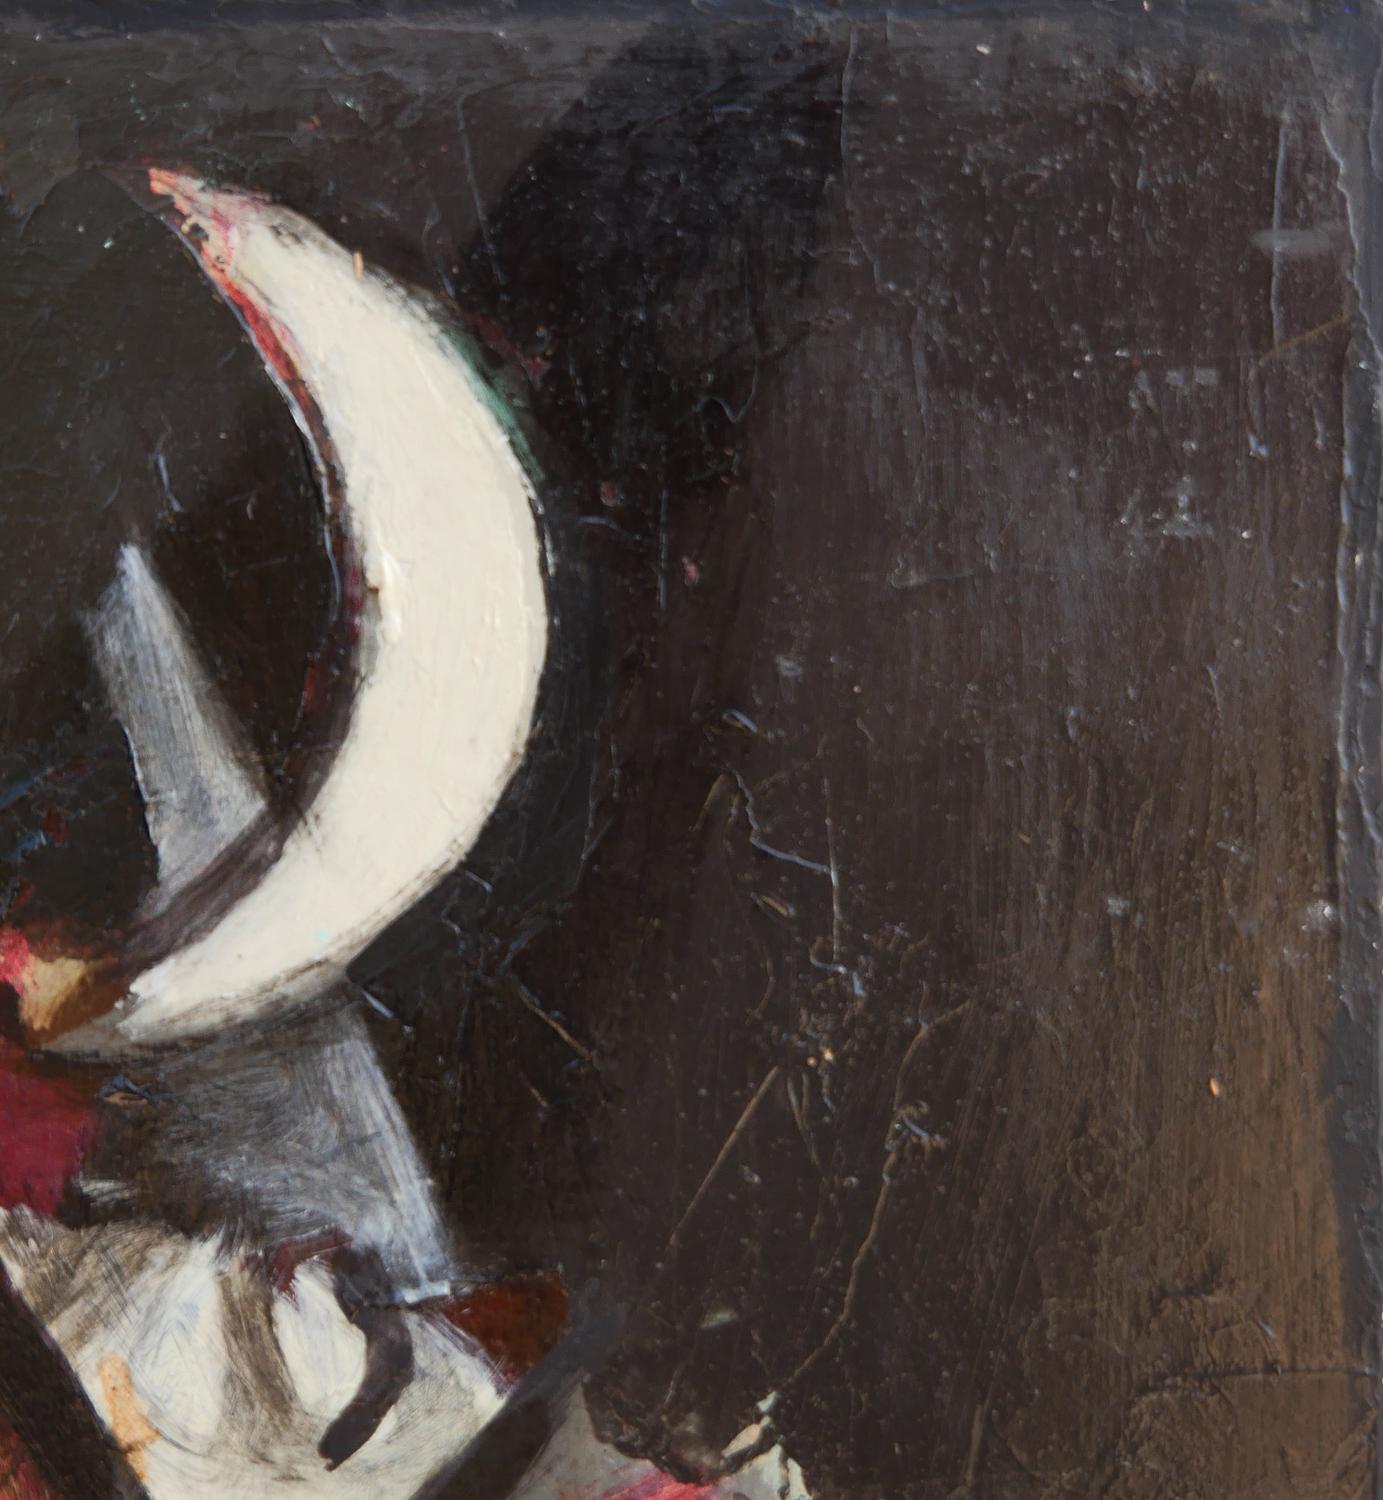 Peinture moderne d'inspiration cubiste d'une scène de nuit par l'artiste David Adickes de Houston, TX. L'œuvre présente des feuilles abstraites tombantes de couleur crème, rouge et grise sur un fond noir. Actuellement non encadré, mais des options